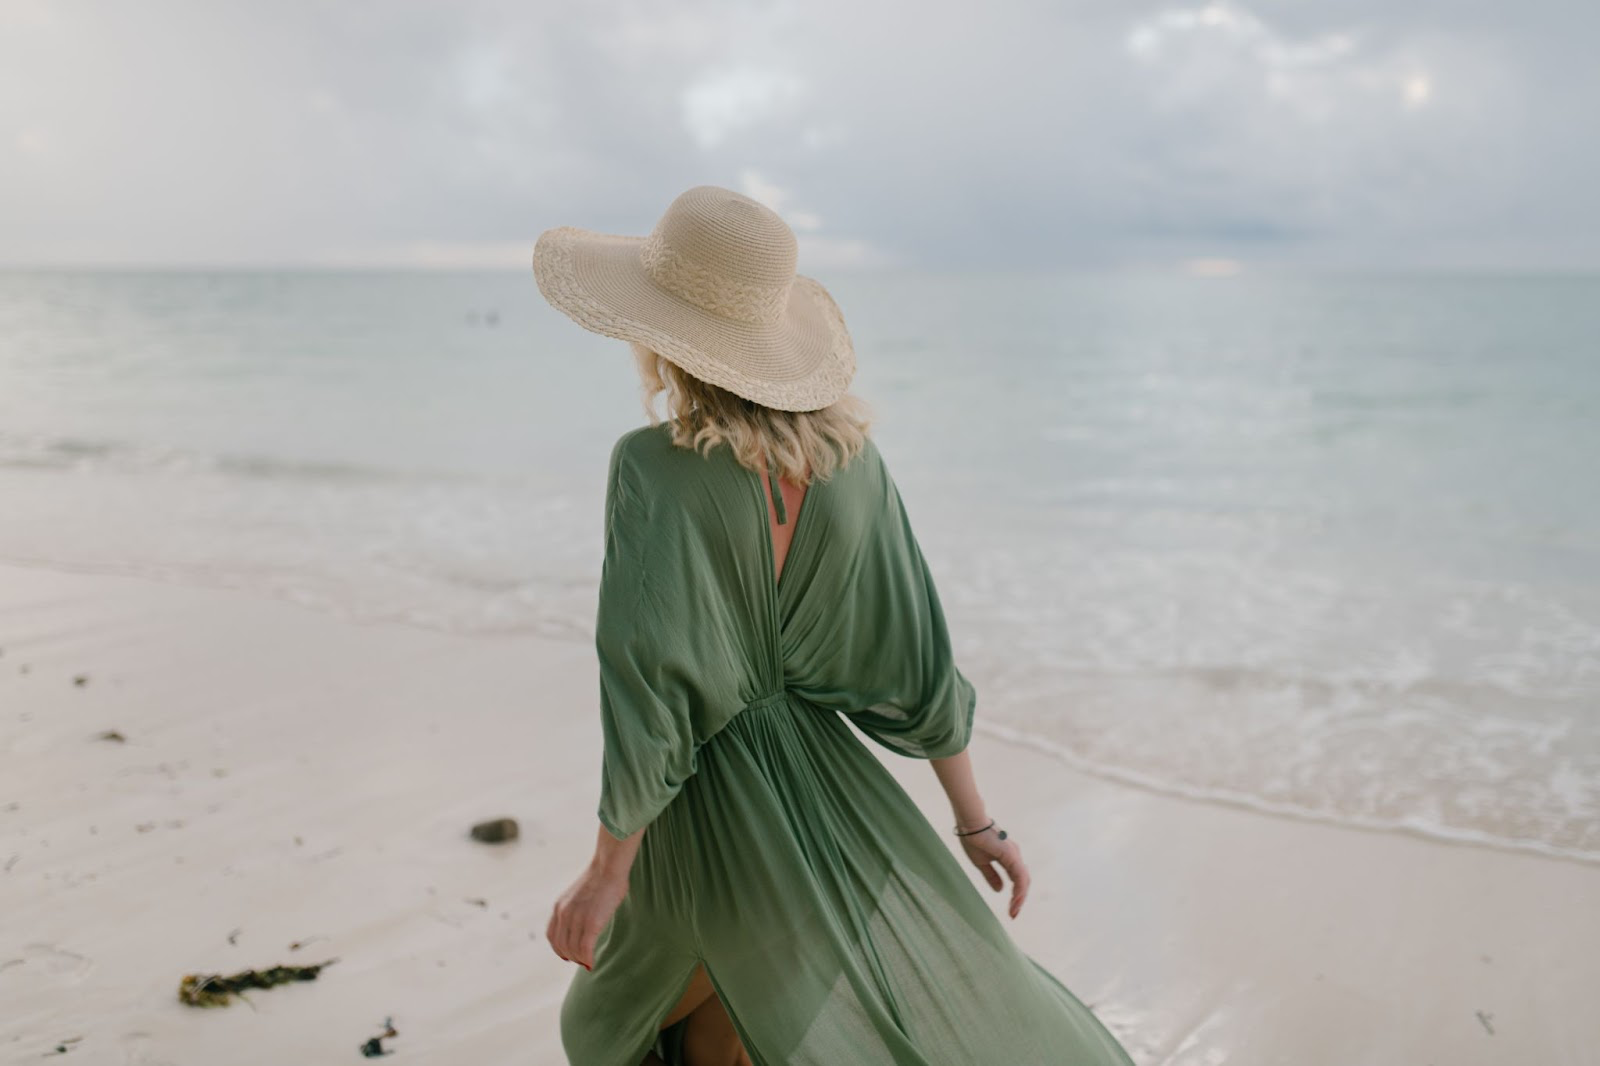 Woman walking alongside a seashore